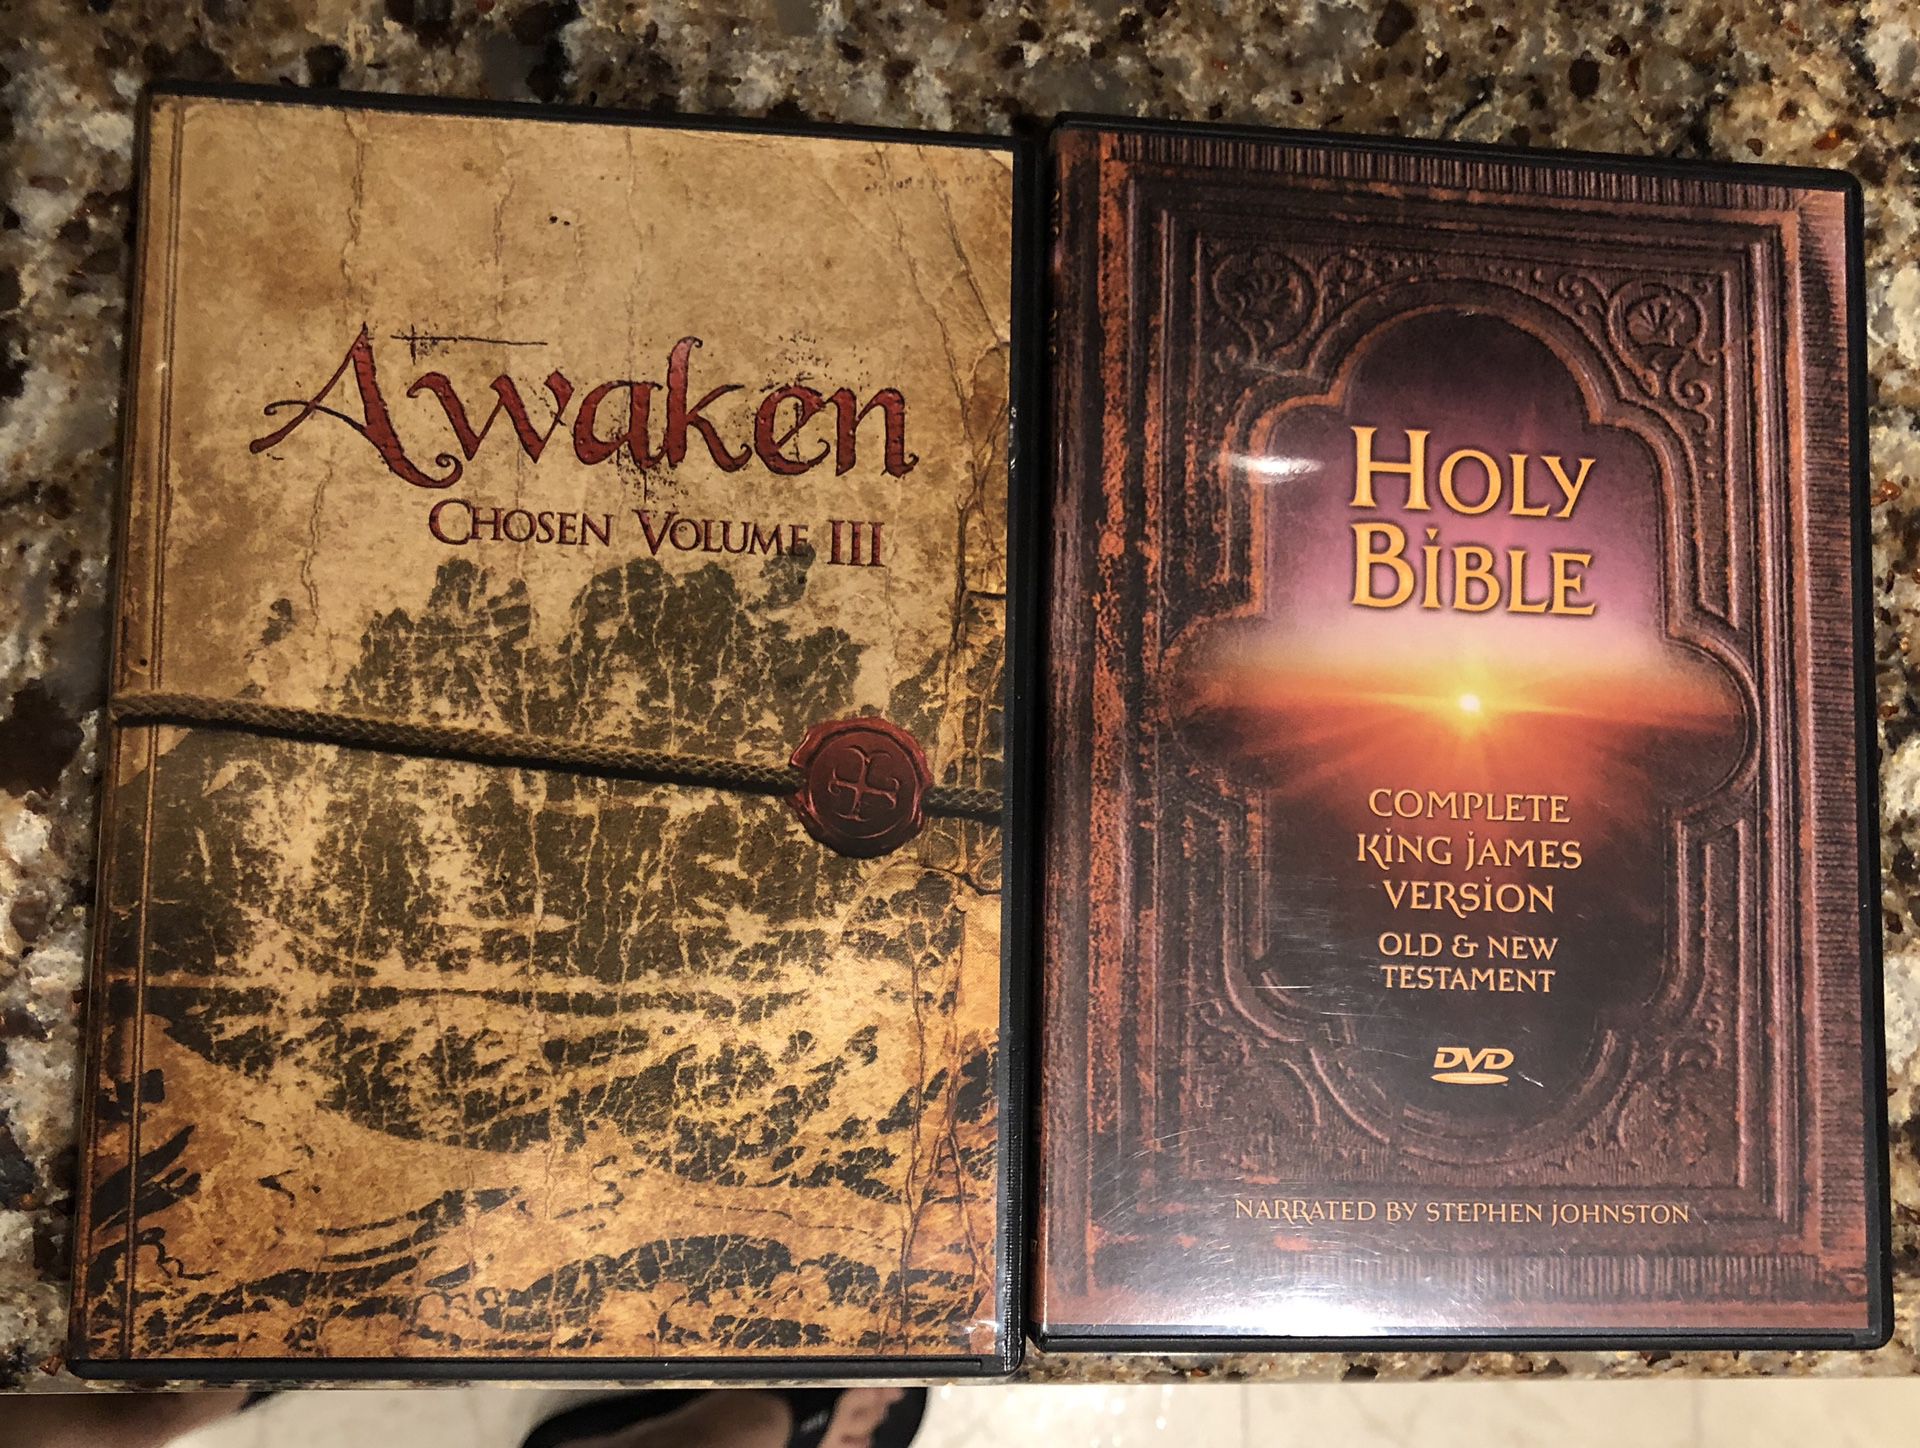 Awaken DVD and Bible on CD